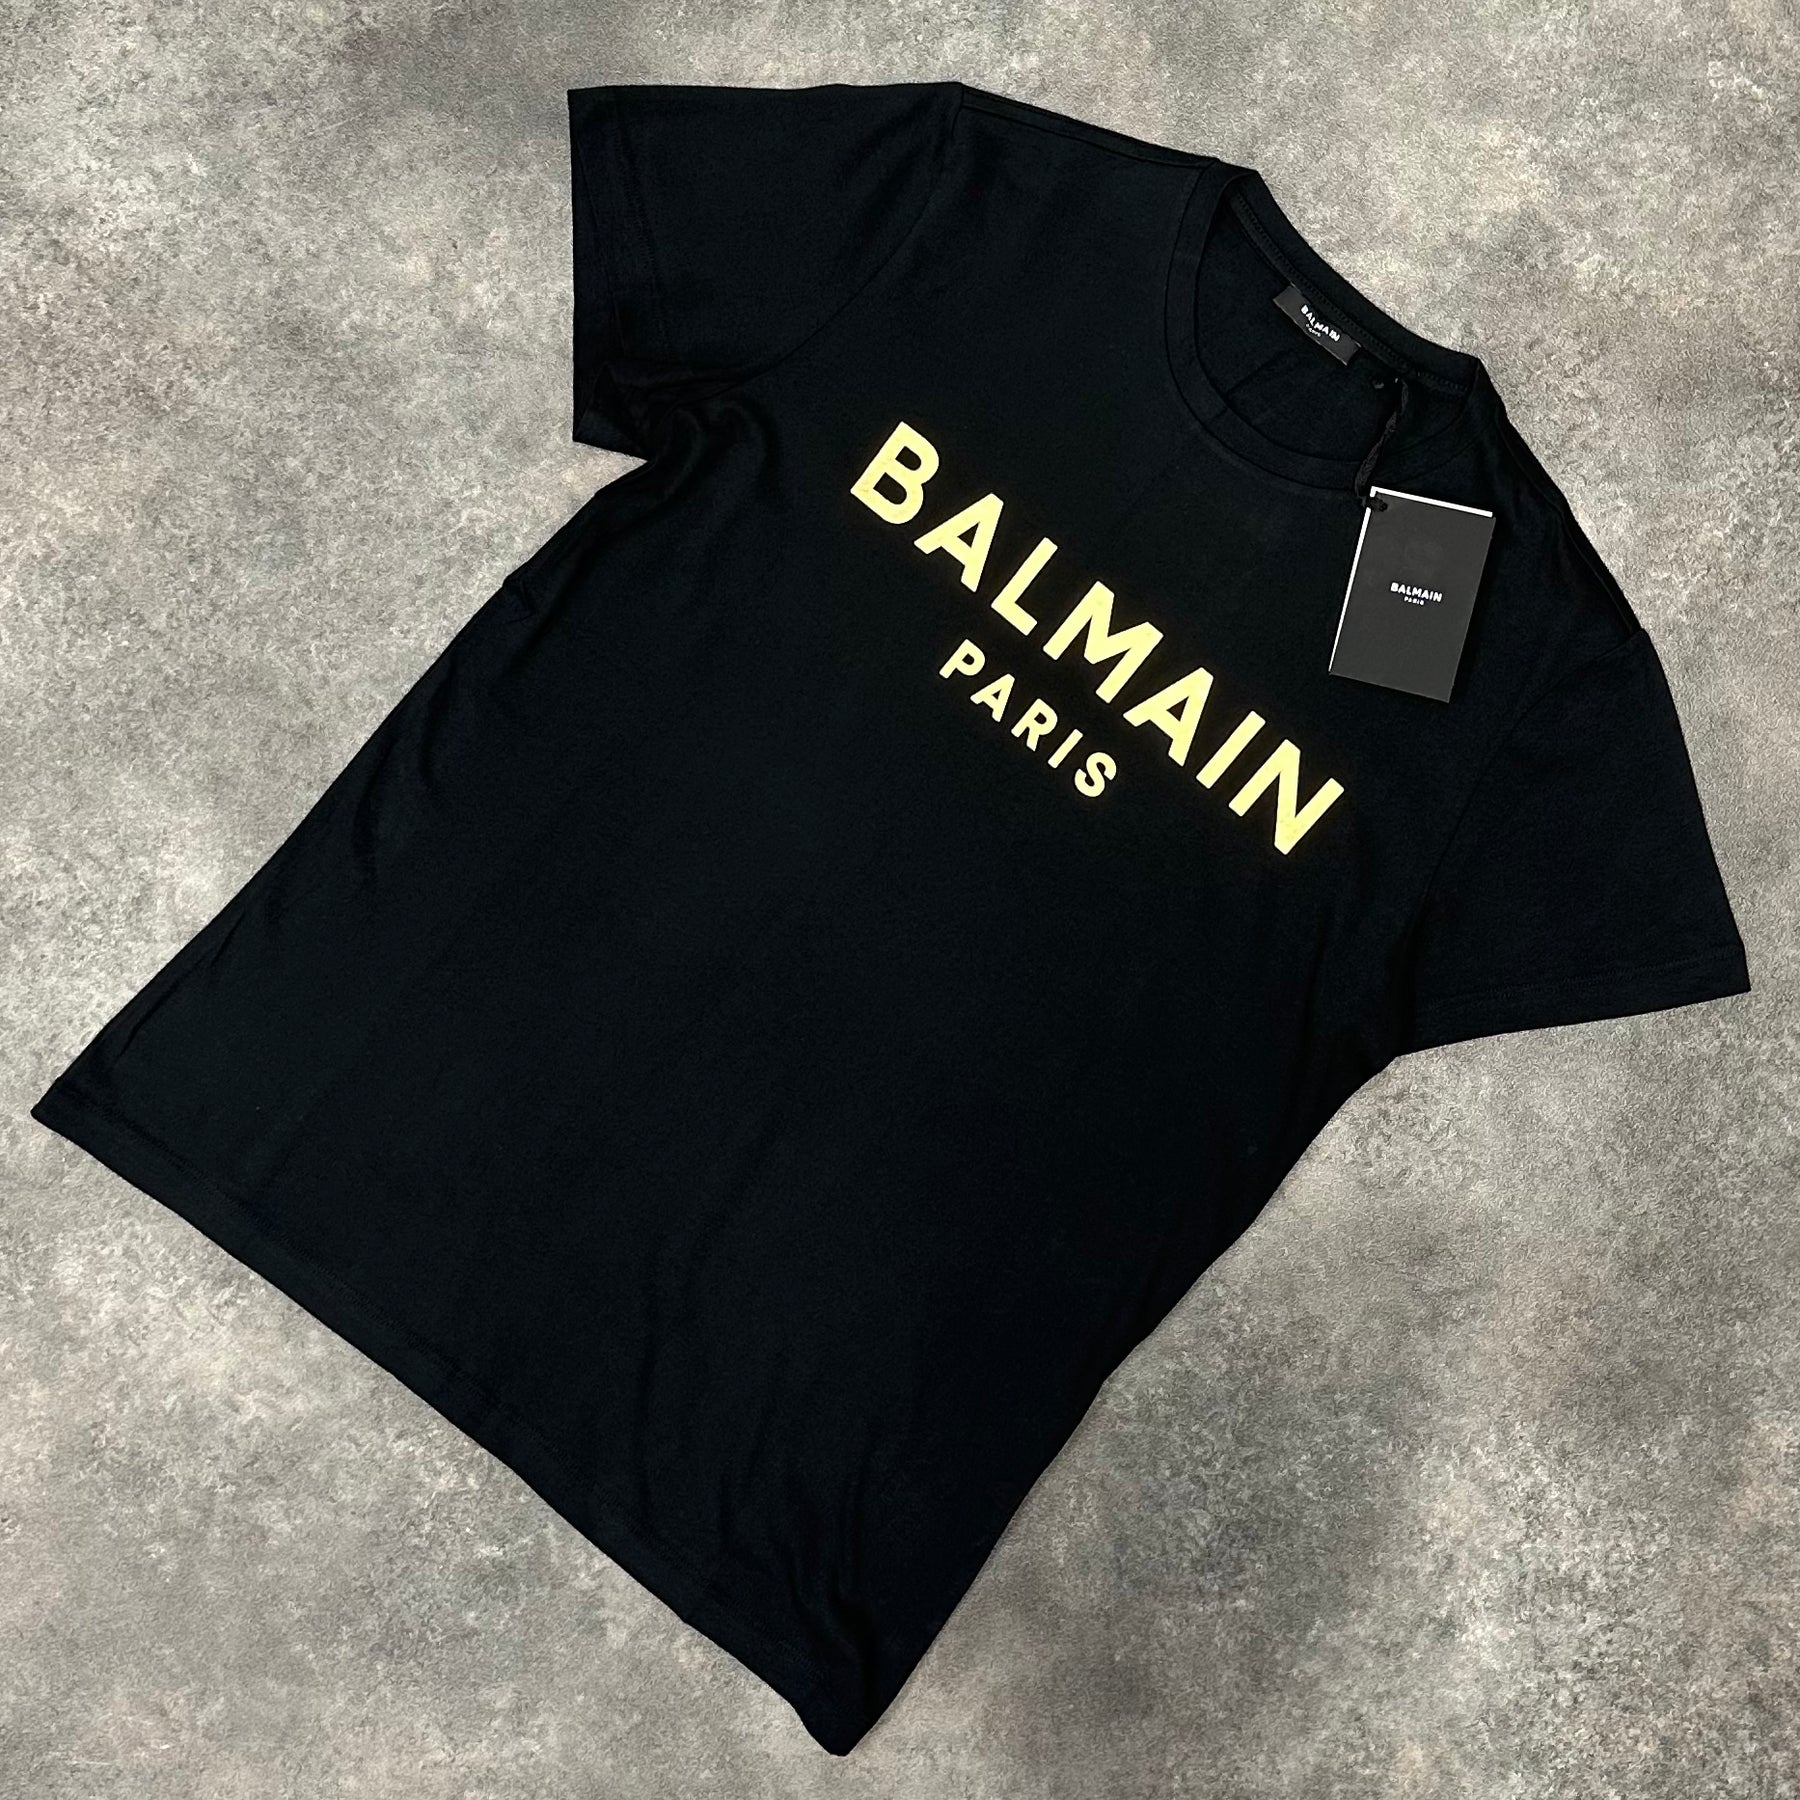 BALMAIN PARIS GOLD TEXT LOGO T-SHIRT BLACK